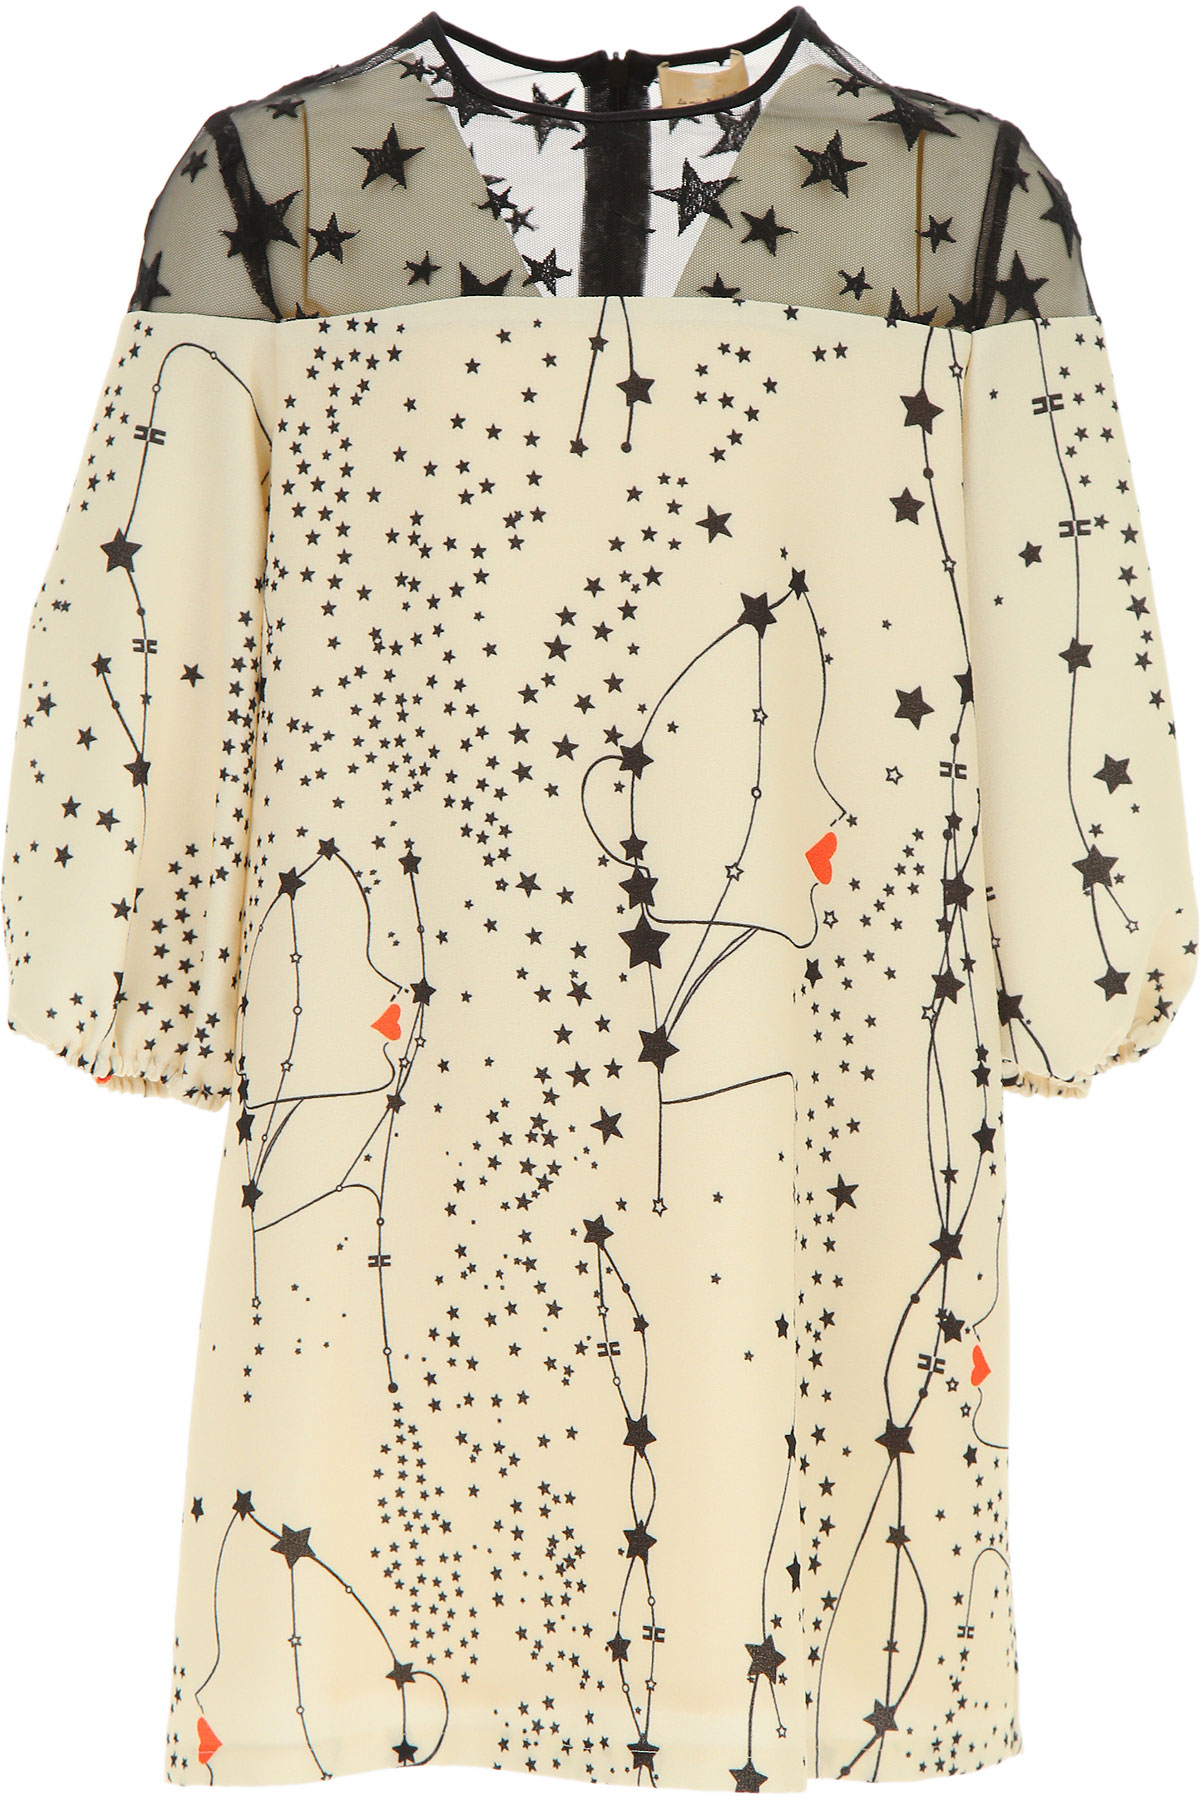 Elisabetta Franchi Kleid für Mädchen Günstig im Sale, Elfenbein, Polyester, 2017, L M S XL